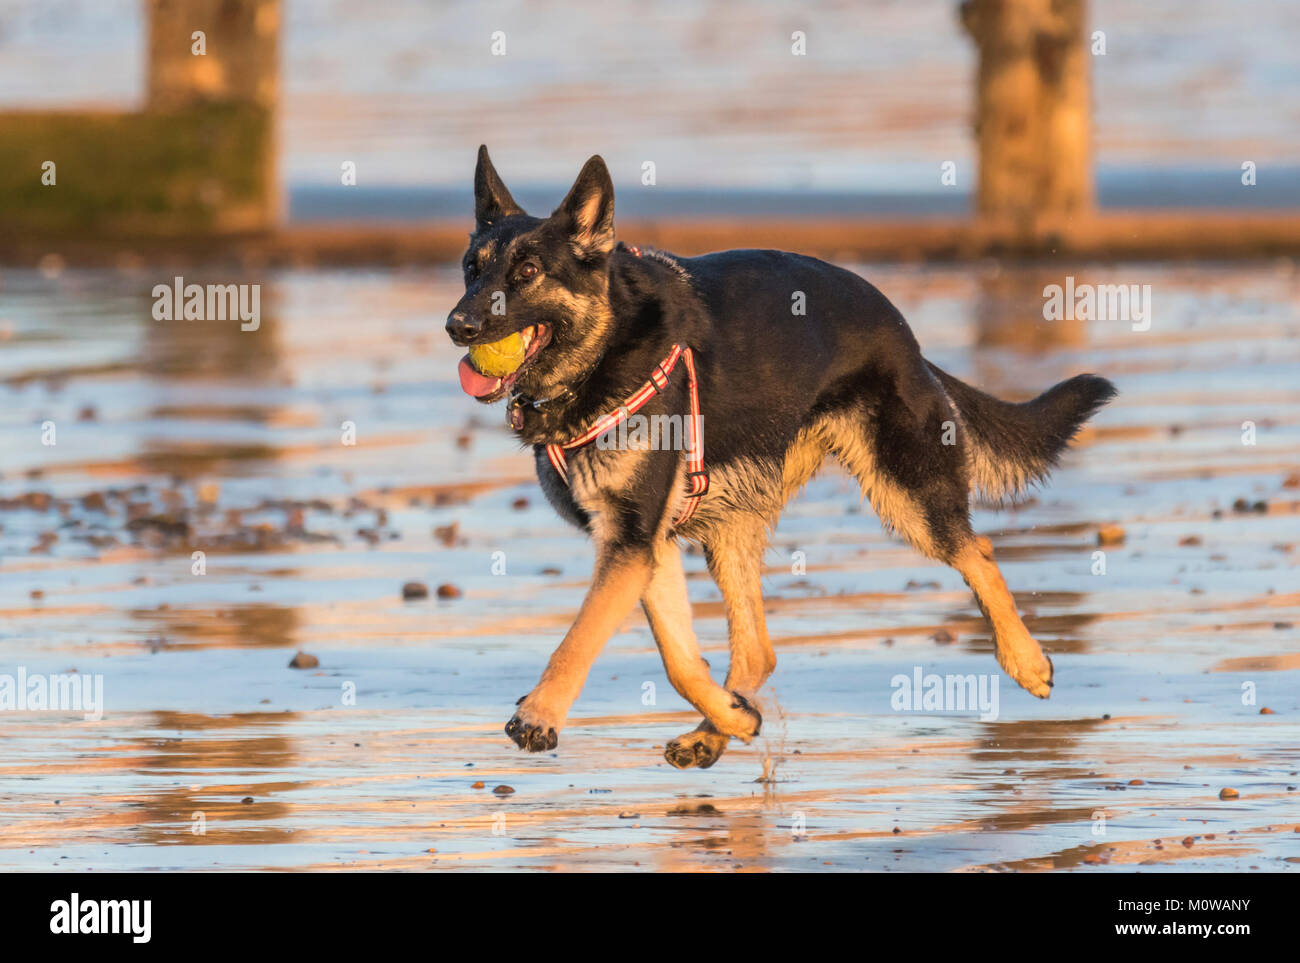 Pastore Tedesco o cane alsaziano in esecuzione su di una spiaggia di sabbia con una palla nella sua bocca. Foto Stock